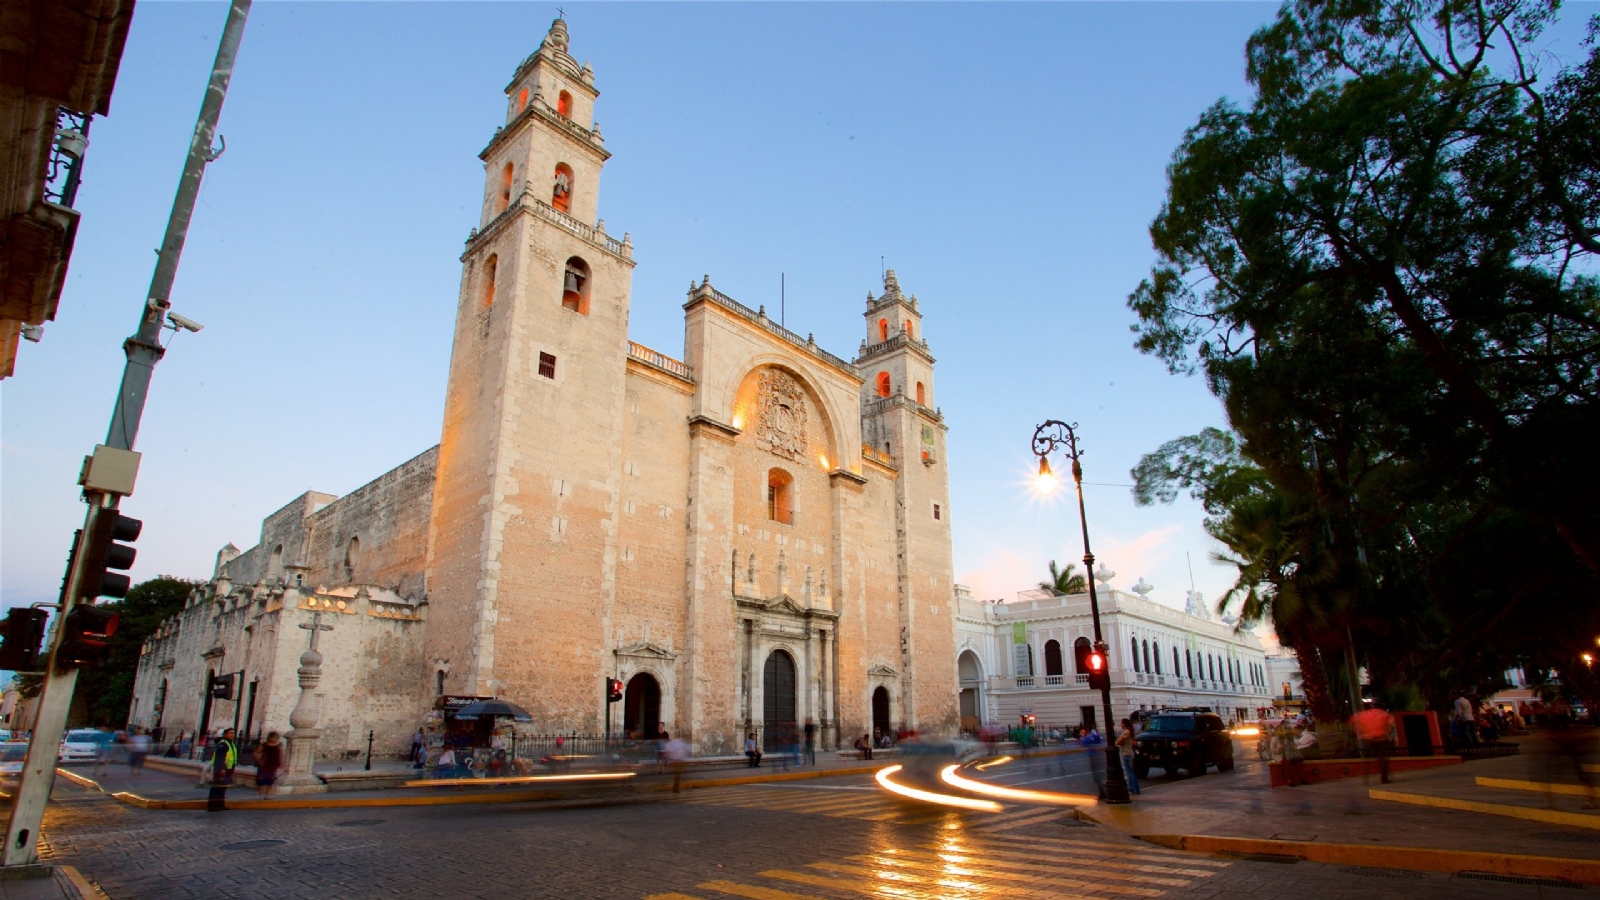 ¿Hay un cenote escondido debajo de la Catedral de Mérida? Esto es lo que se sabe